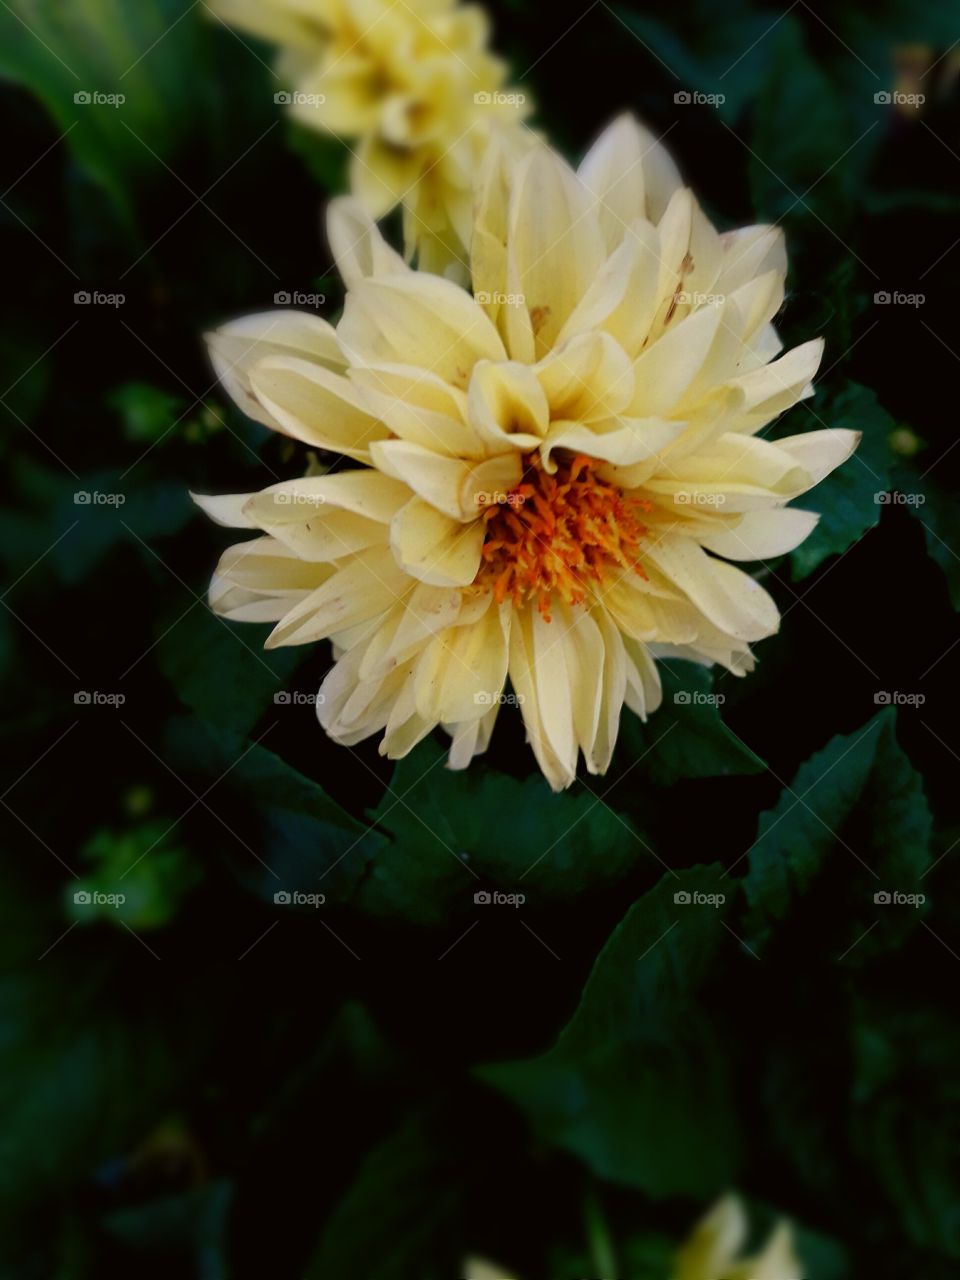 Yellow colour Daliya season flower with dark green leaf